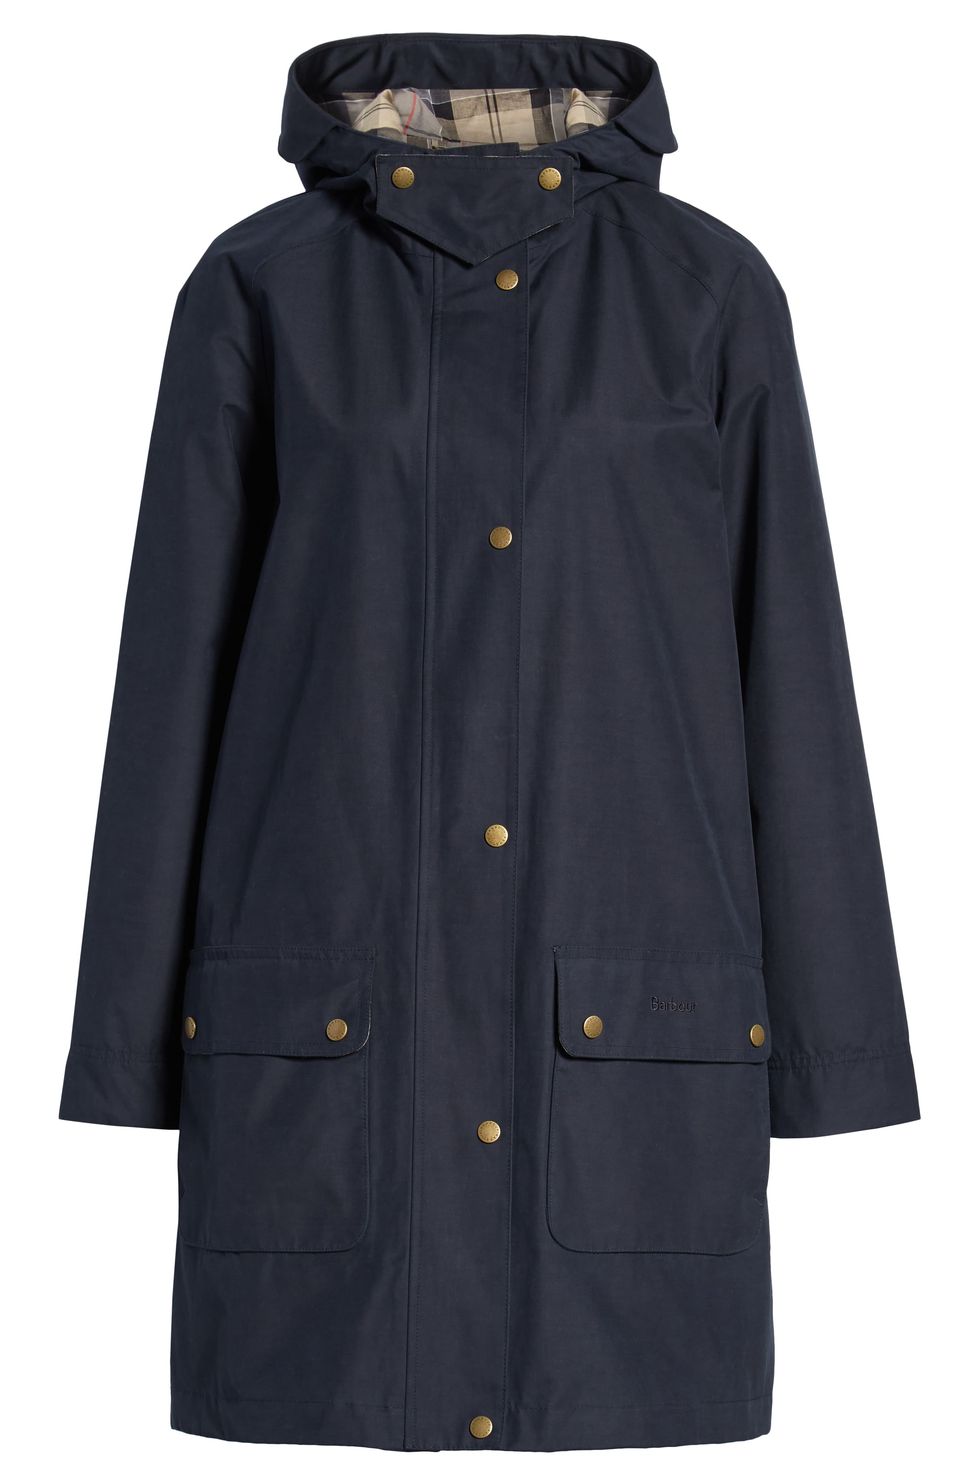 Overcast Waterproof Raincoat with Hood